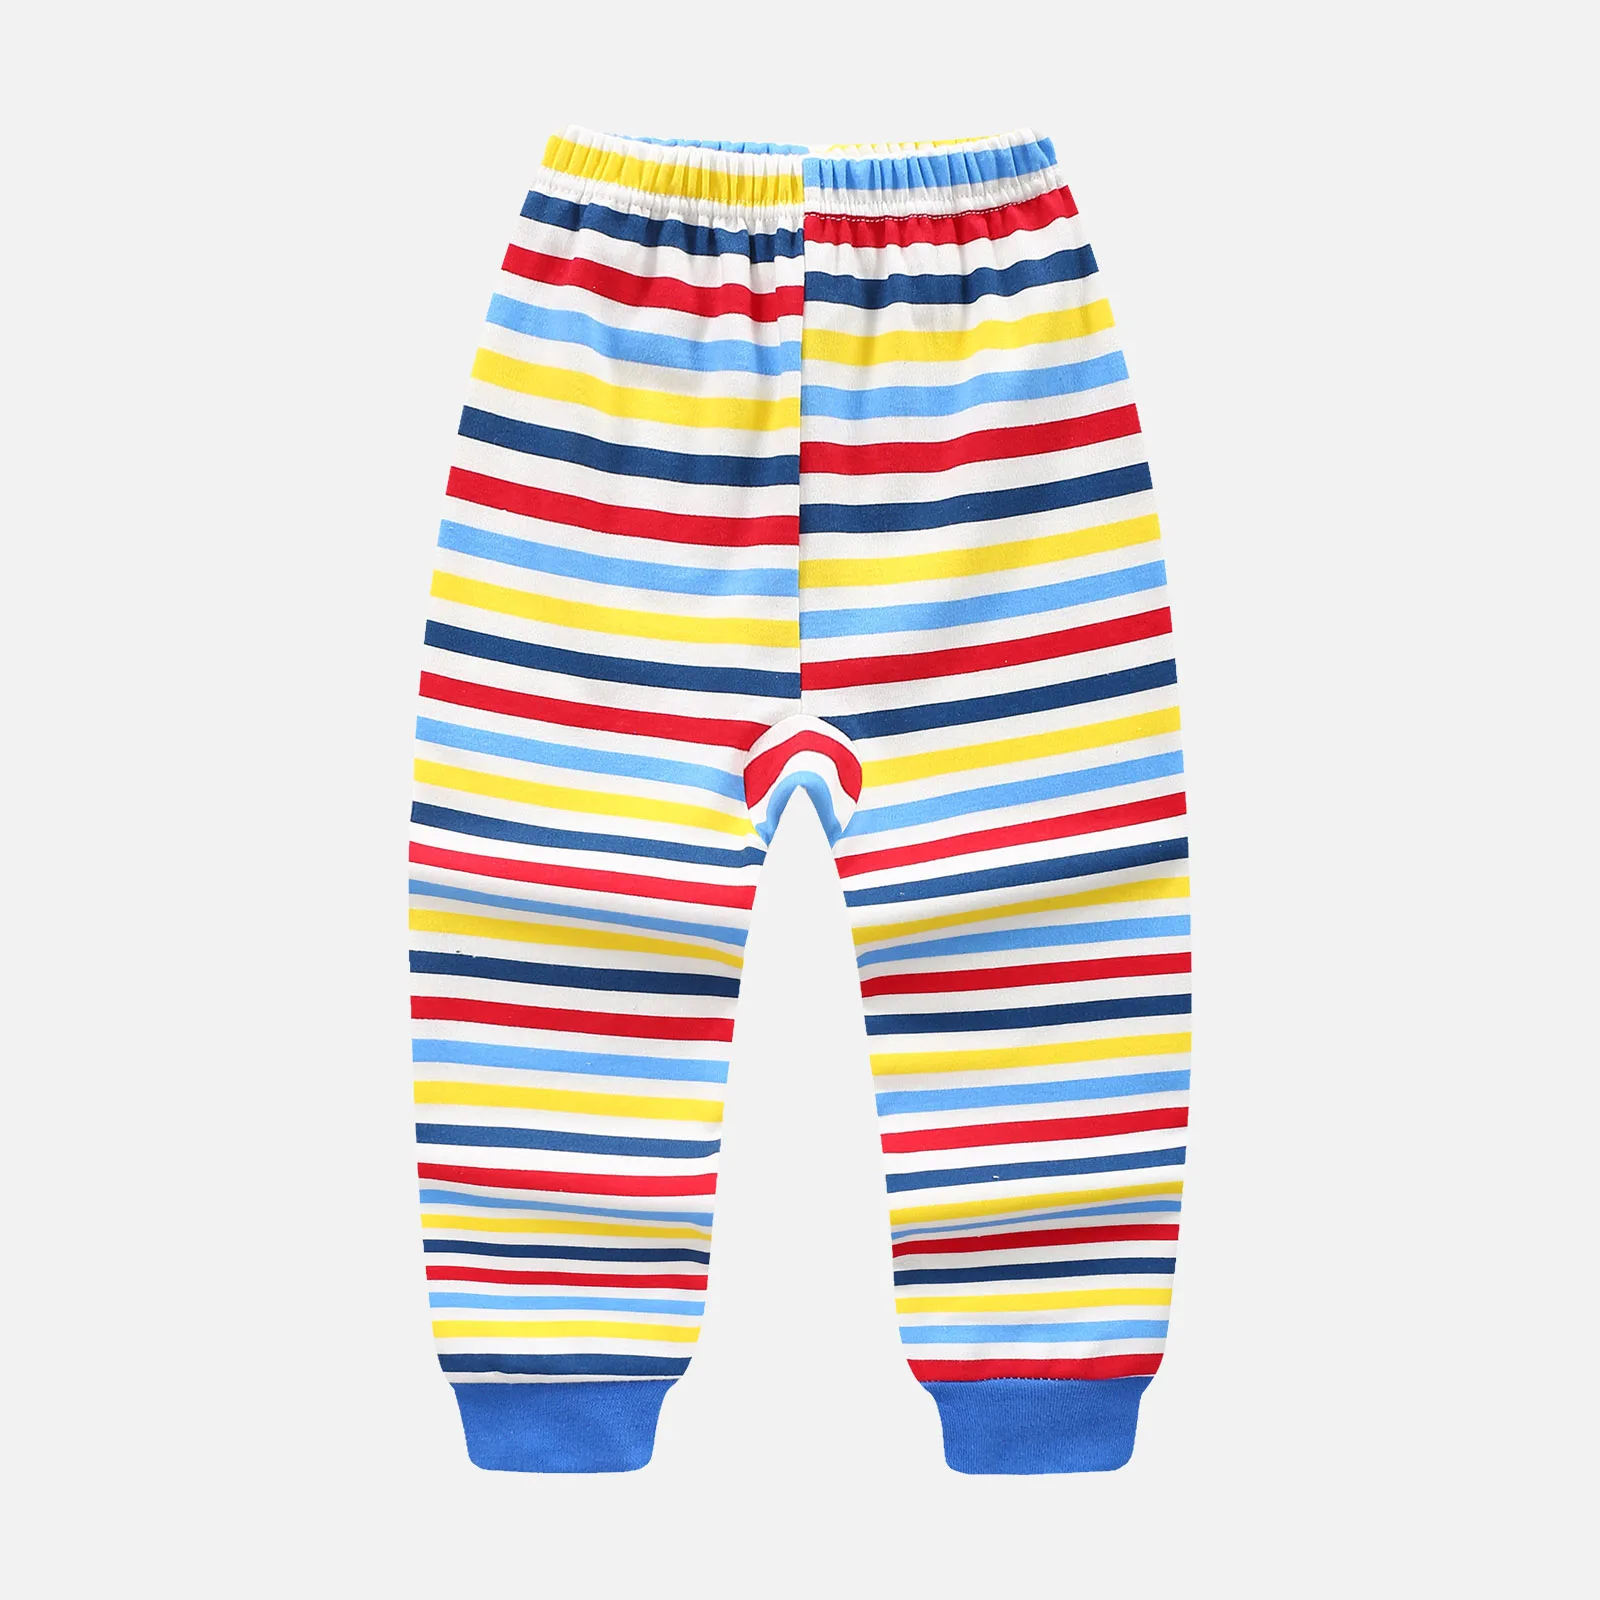 Теплые пижамные комплекты для детей от 3 до 8 лет хлопковый костюм для сна для мальчиков теплые пижамы для девочек топы с длинными рукавами+ штаны, одежда для детей, DS29